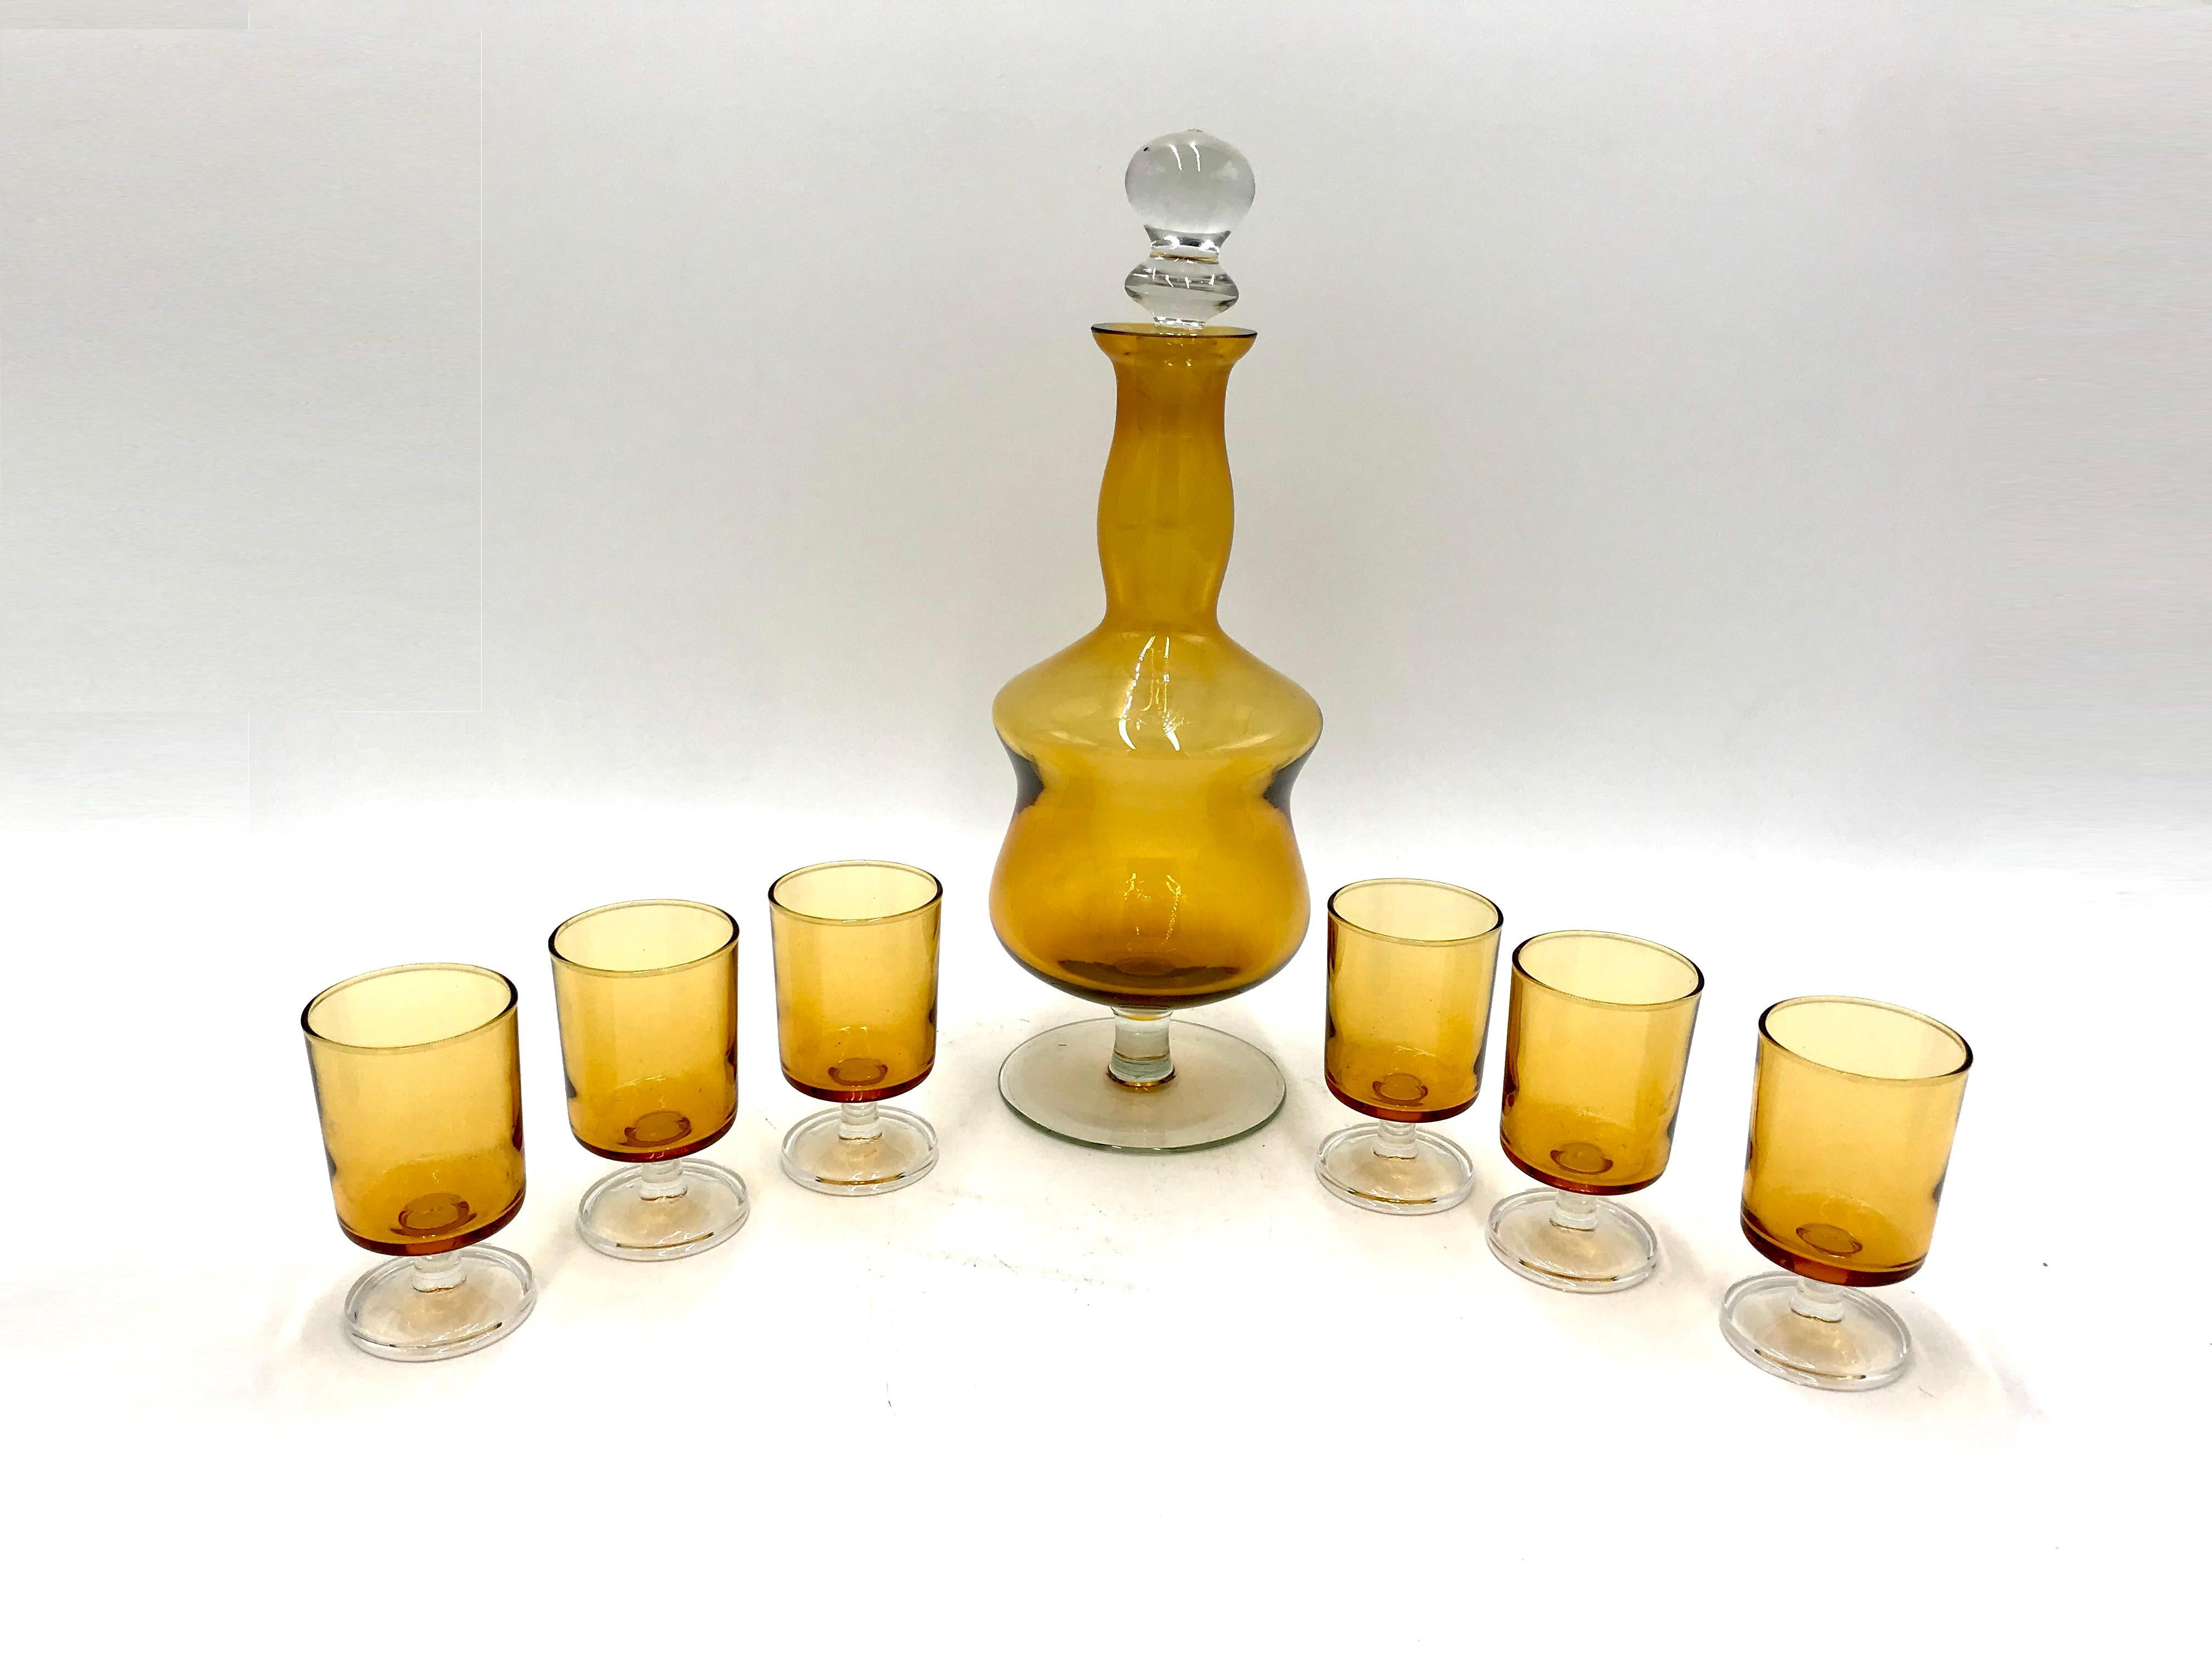 Likörset aus Glas in einer honigfarbenen Karaffe + 6 Gläser auf einem Stiel.

Sehr guter Zustand, keine Schäden.

Gläser mit der Unterschrift FRANCE auf dem Boden

Maße: Höhe 32 cm, Durchmesser 11 cm.